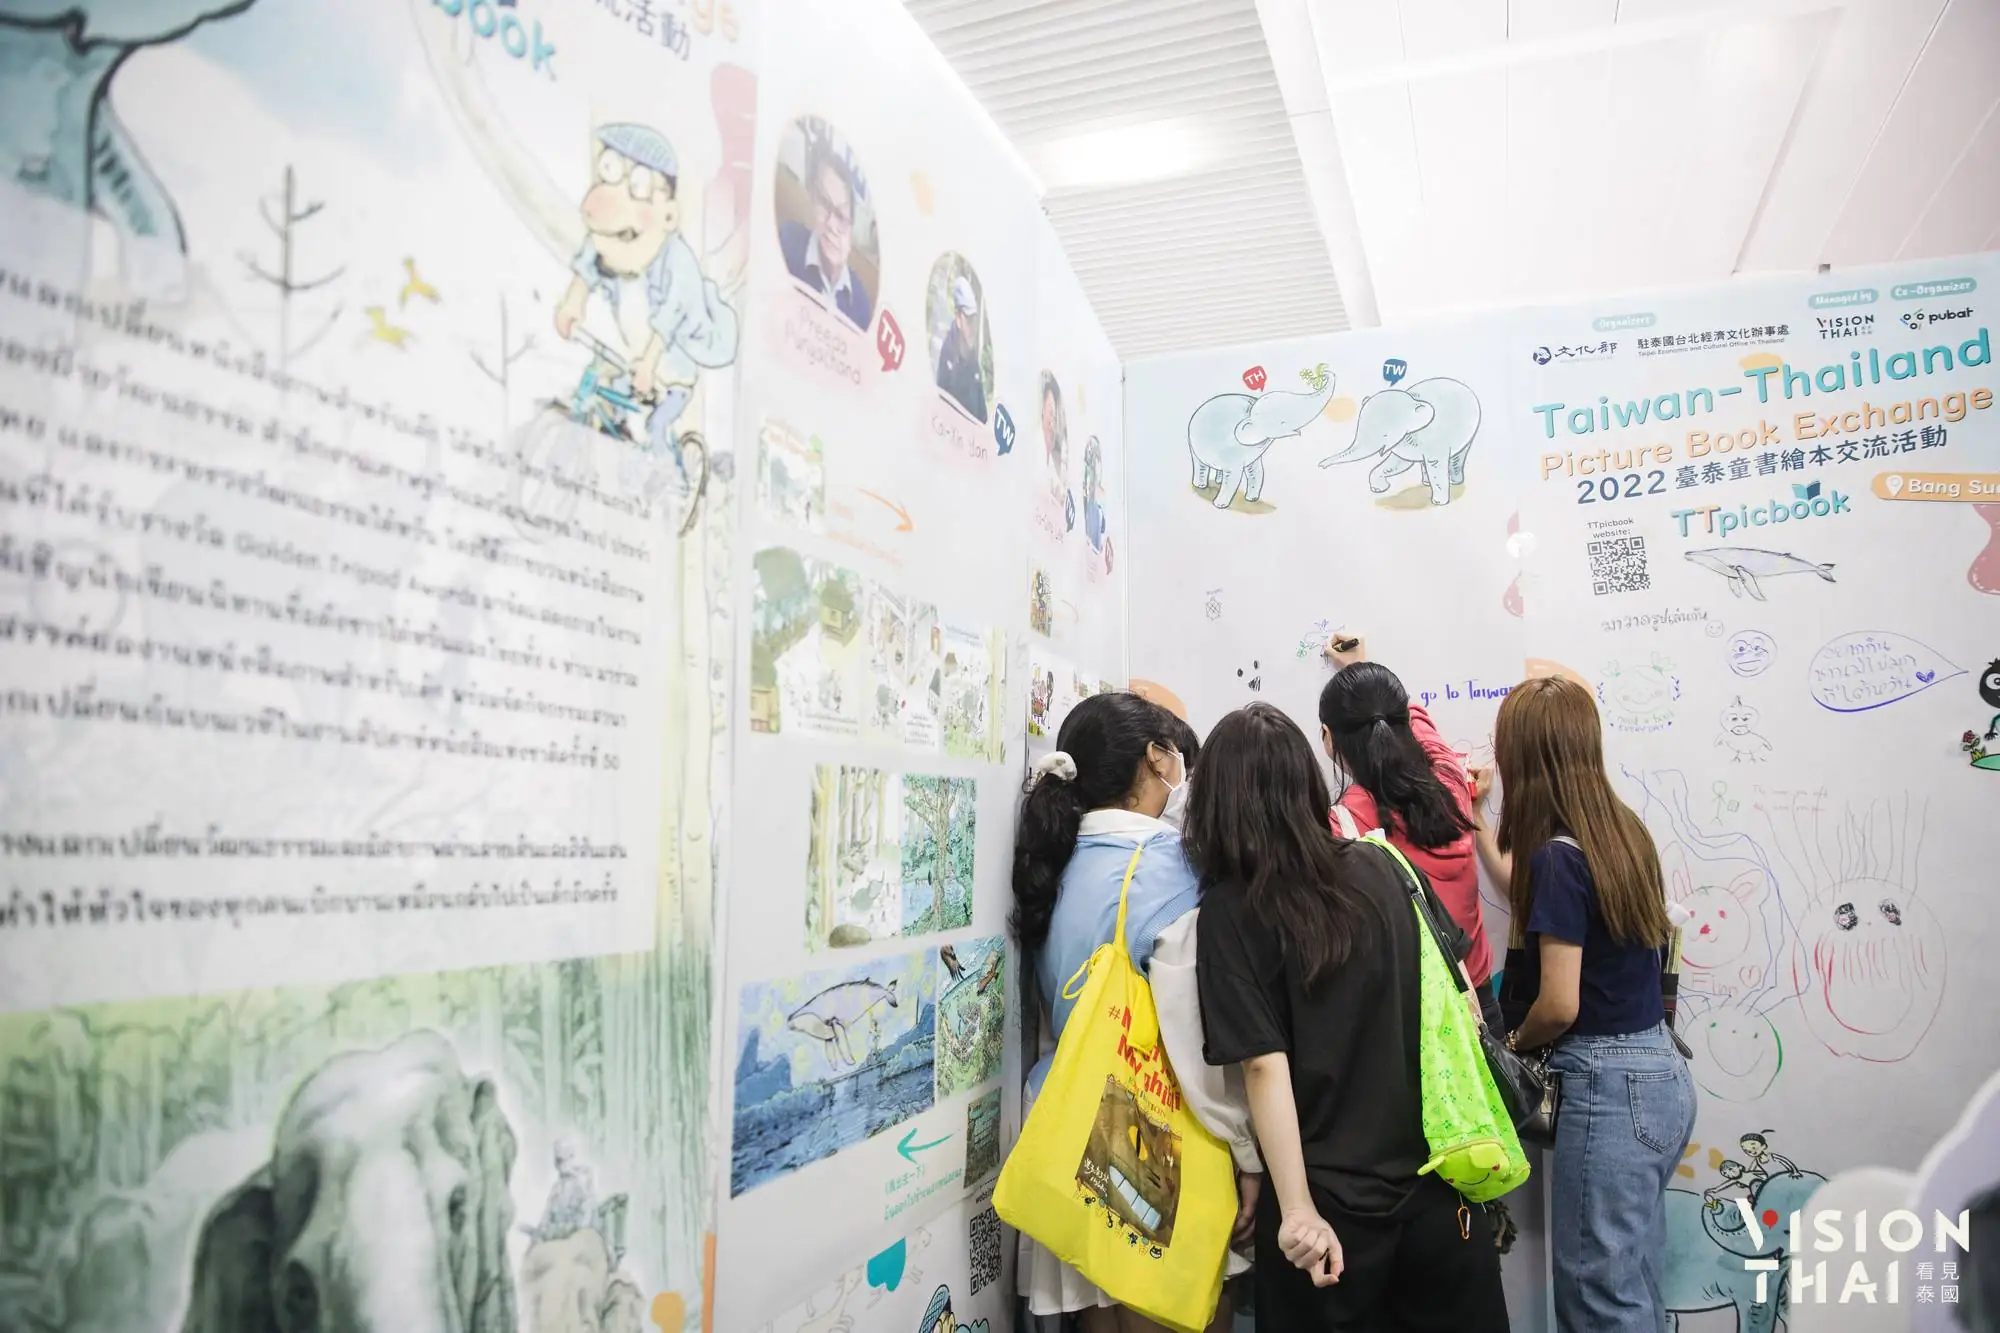 展出臺泰共創作品與精選臺灣繪本，並在攤位陳設互動牆讓民眾揮灑創意。